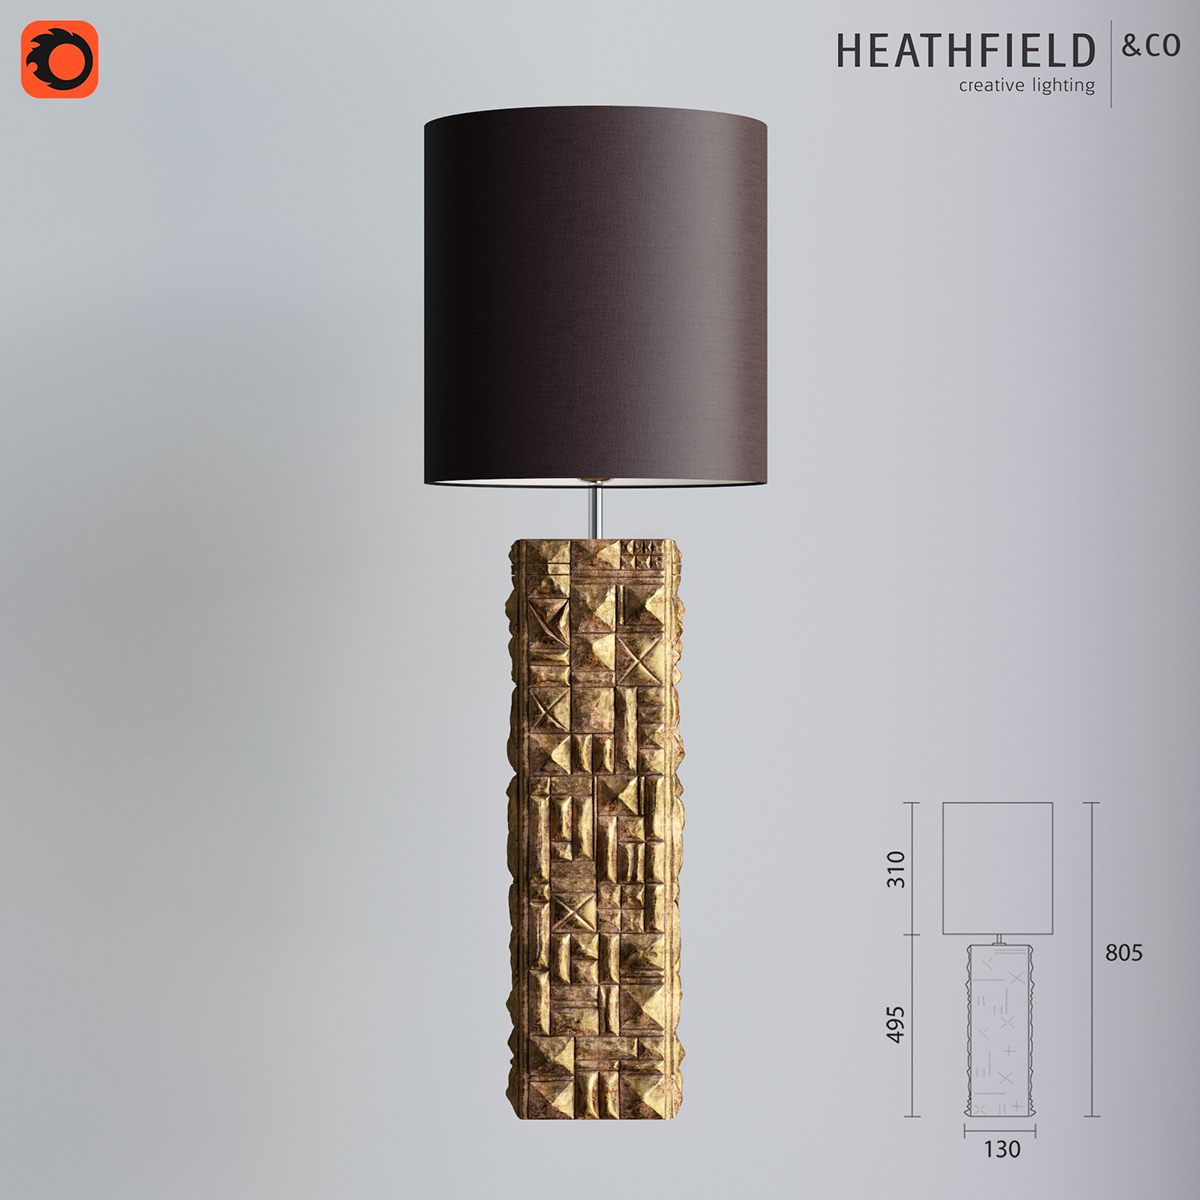 Heathfield & Co 3 table lamps FREE 3d models on Behance